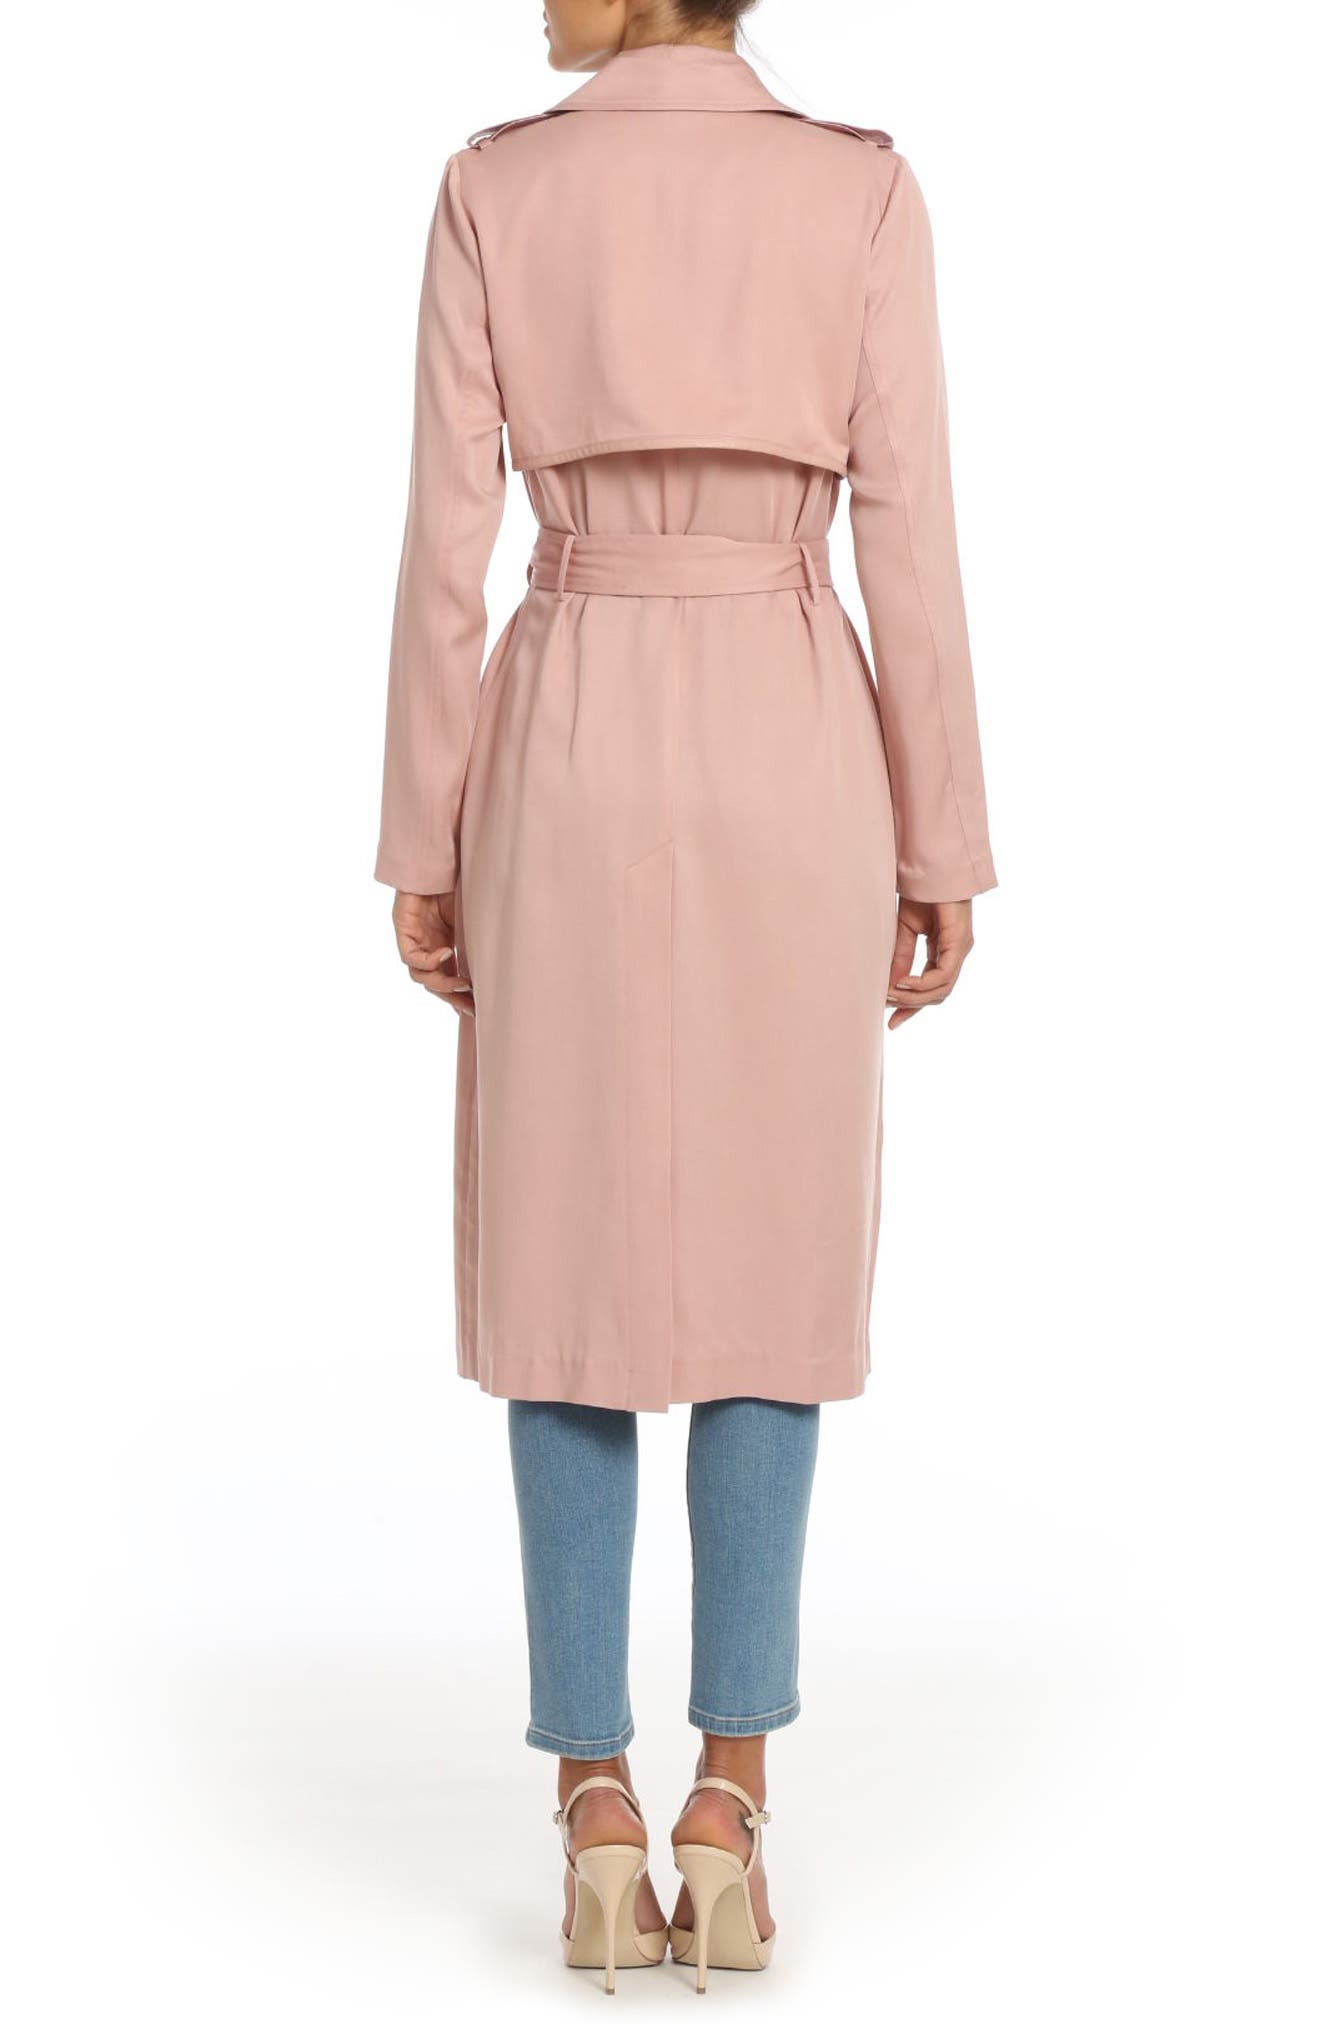 Pink Coat Dress – Fashion dresses